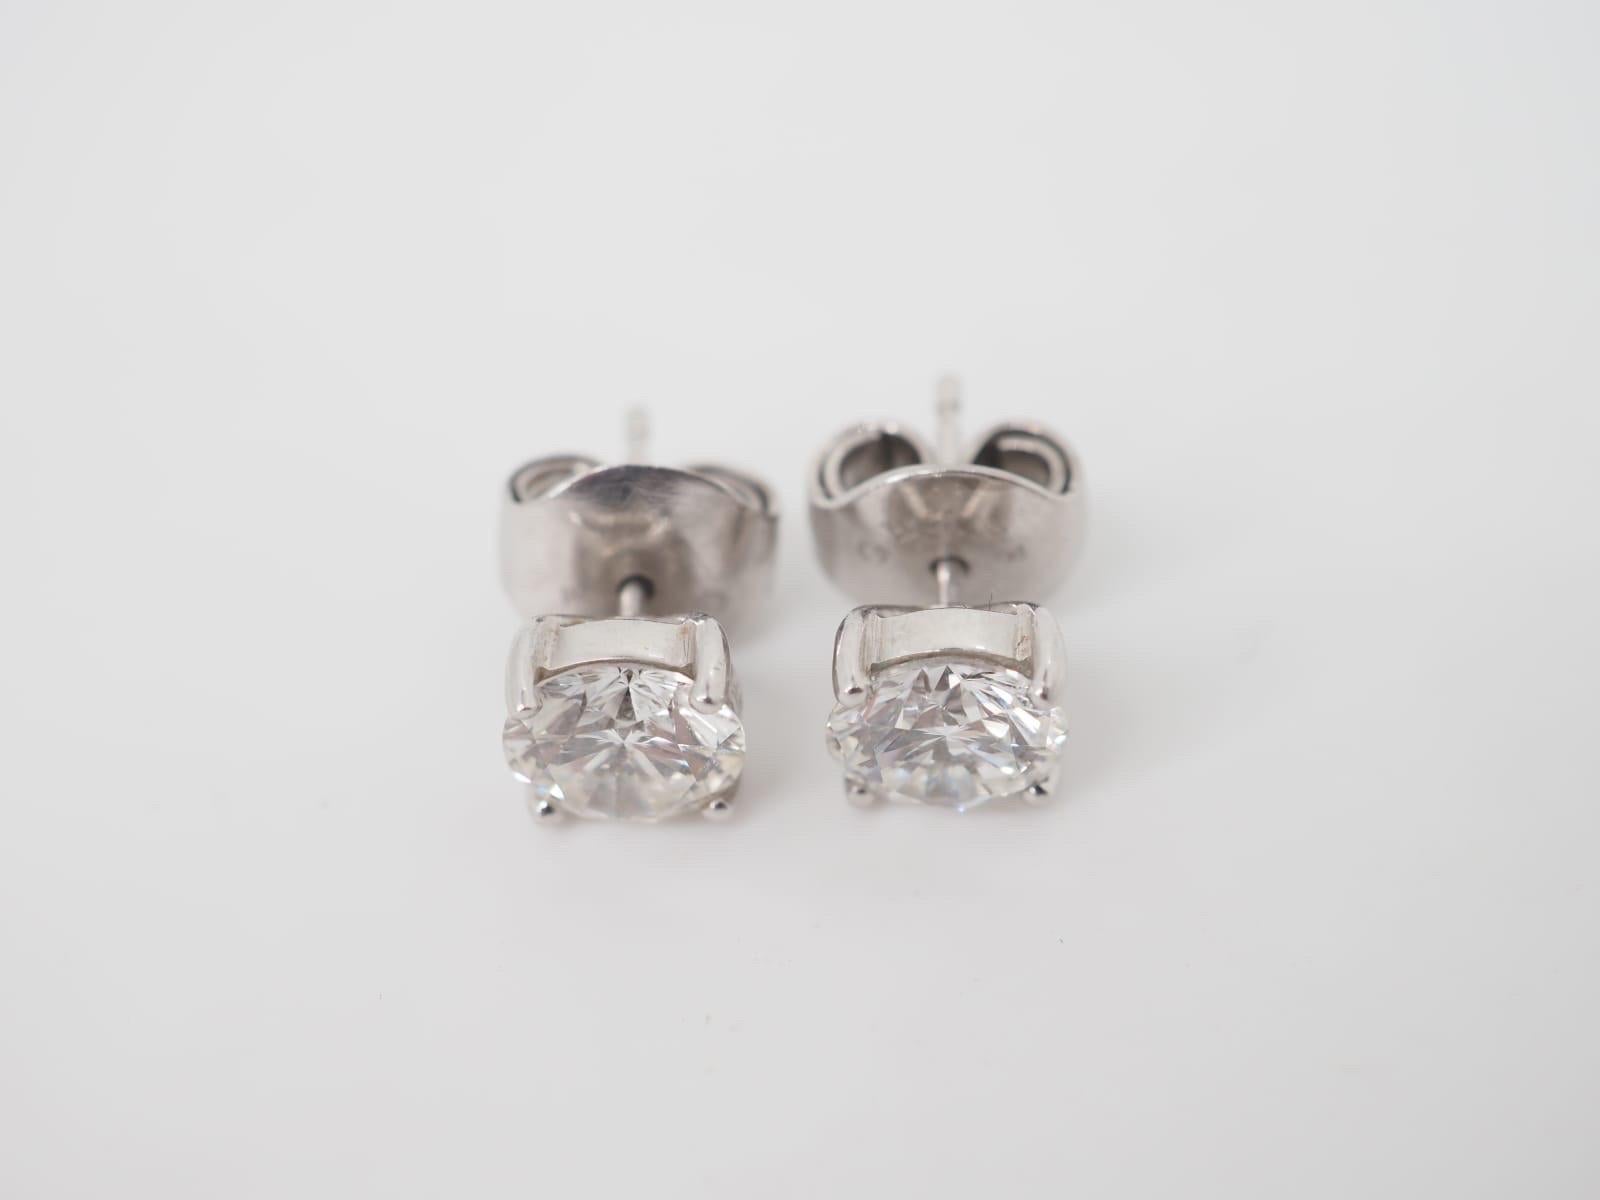 Boucles d'oreilles en diamant Graff réalisées en or blanc 18 carats avec des diamants d'un poids total de 3 cts E/VS1. Ces magnifiques boucles d'oreilles présentent deux diamants Graff de 1,5 ct E/VS1 de taille ronde et brillante, montés sur des